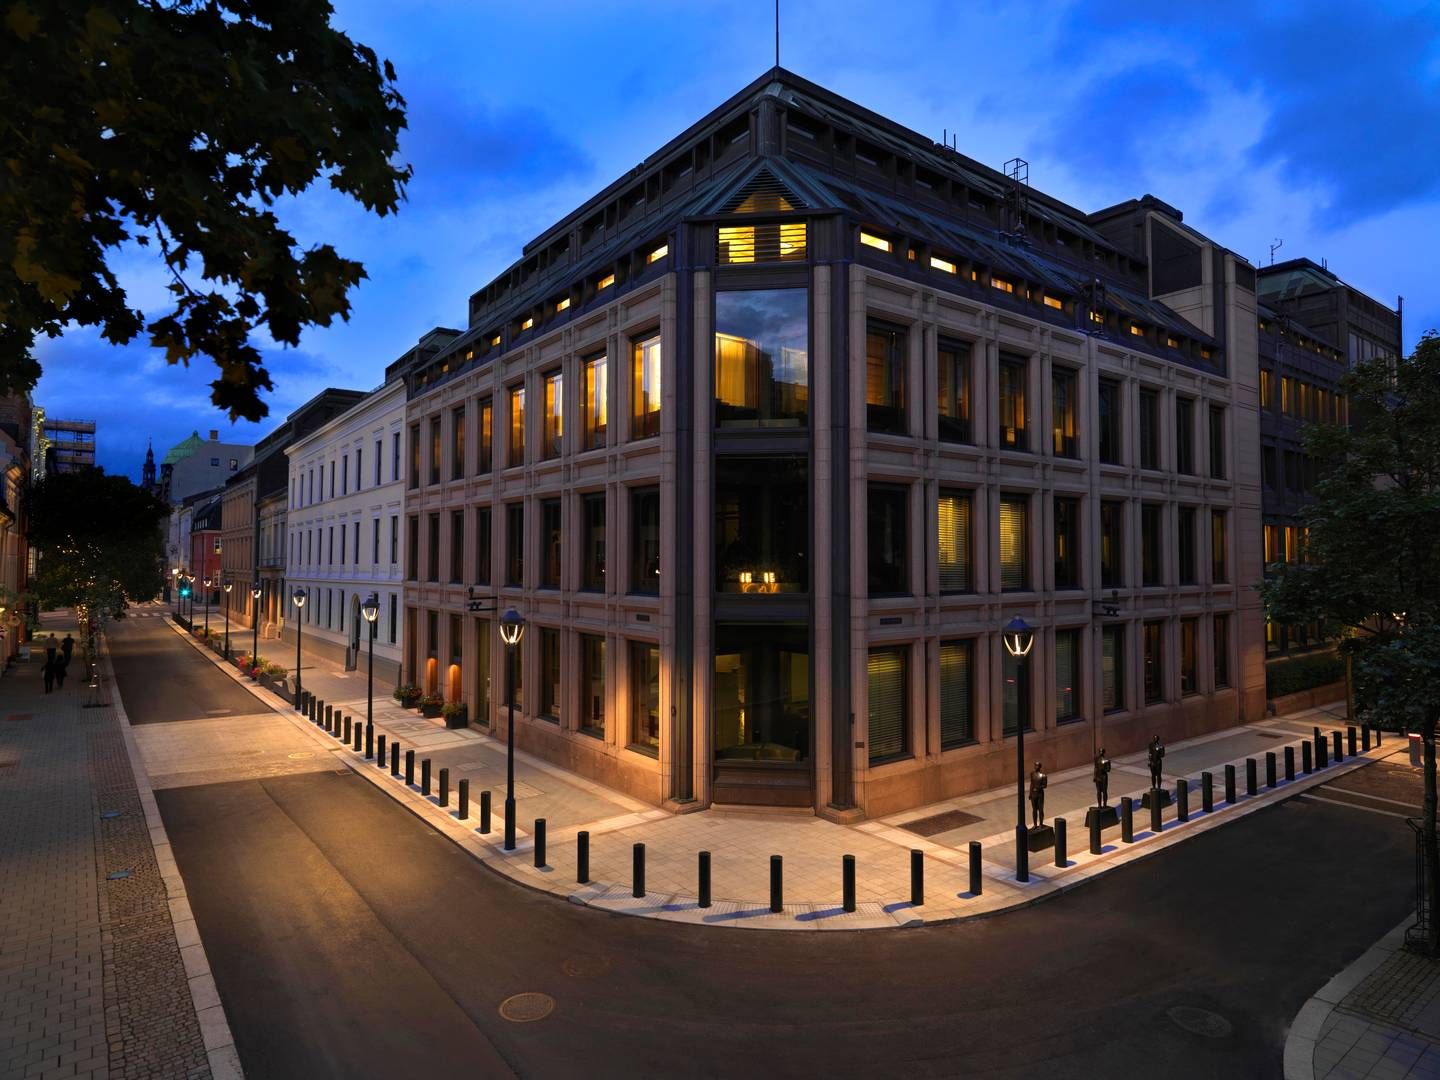 Norges Bank Investment Management holder til i det centrale Oslo, og oliefonden ejer i gennemsnit 1,5 pct. af alle børsnoterede aktier i verden. Det gør fonden til verdens største aktieinvestor. | Foto: Pr/norges Bank